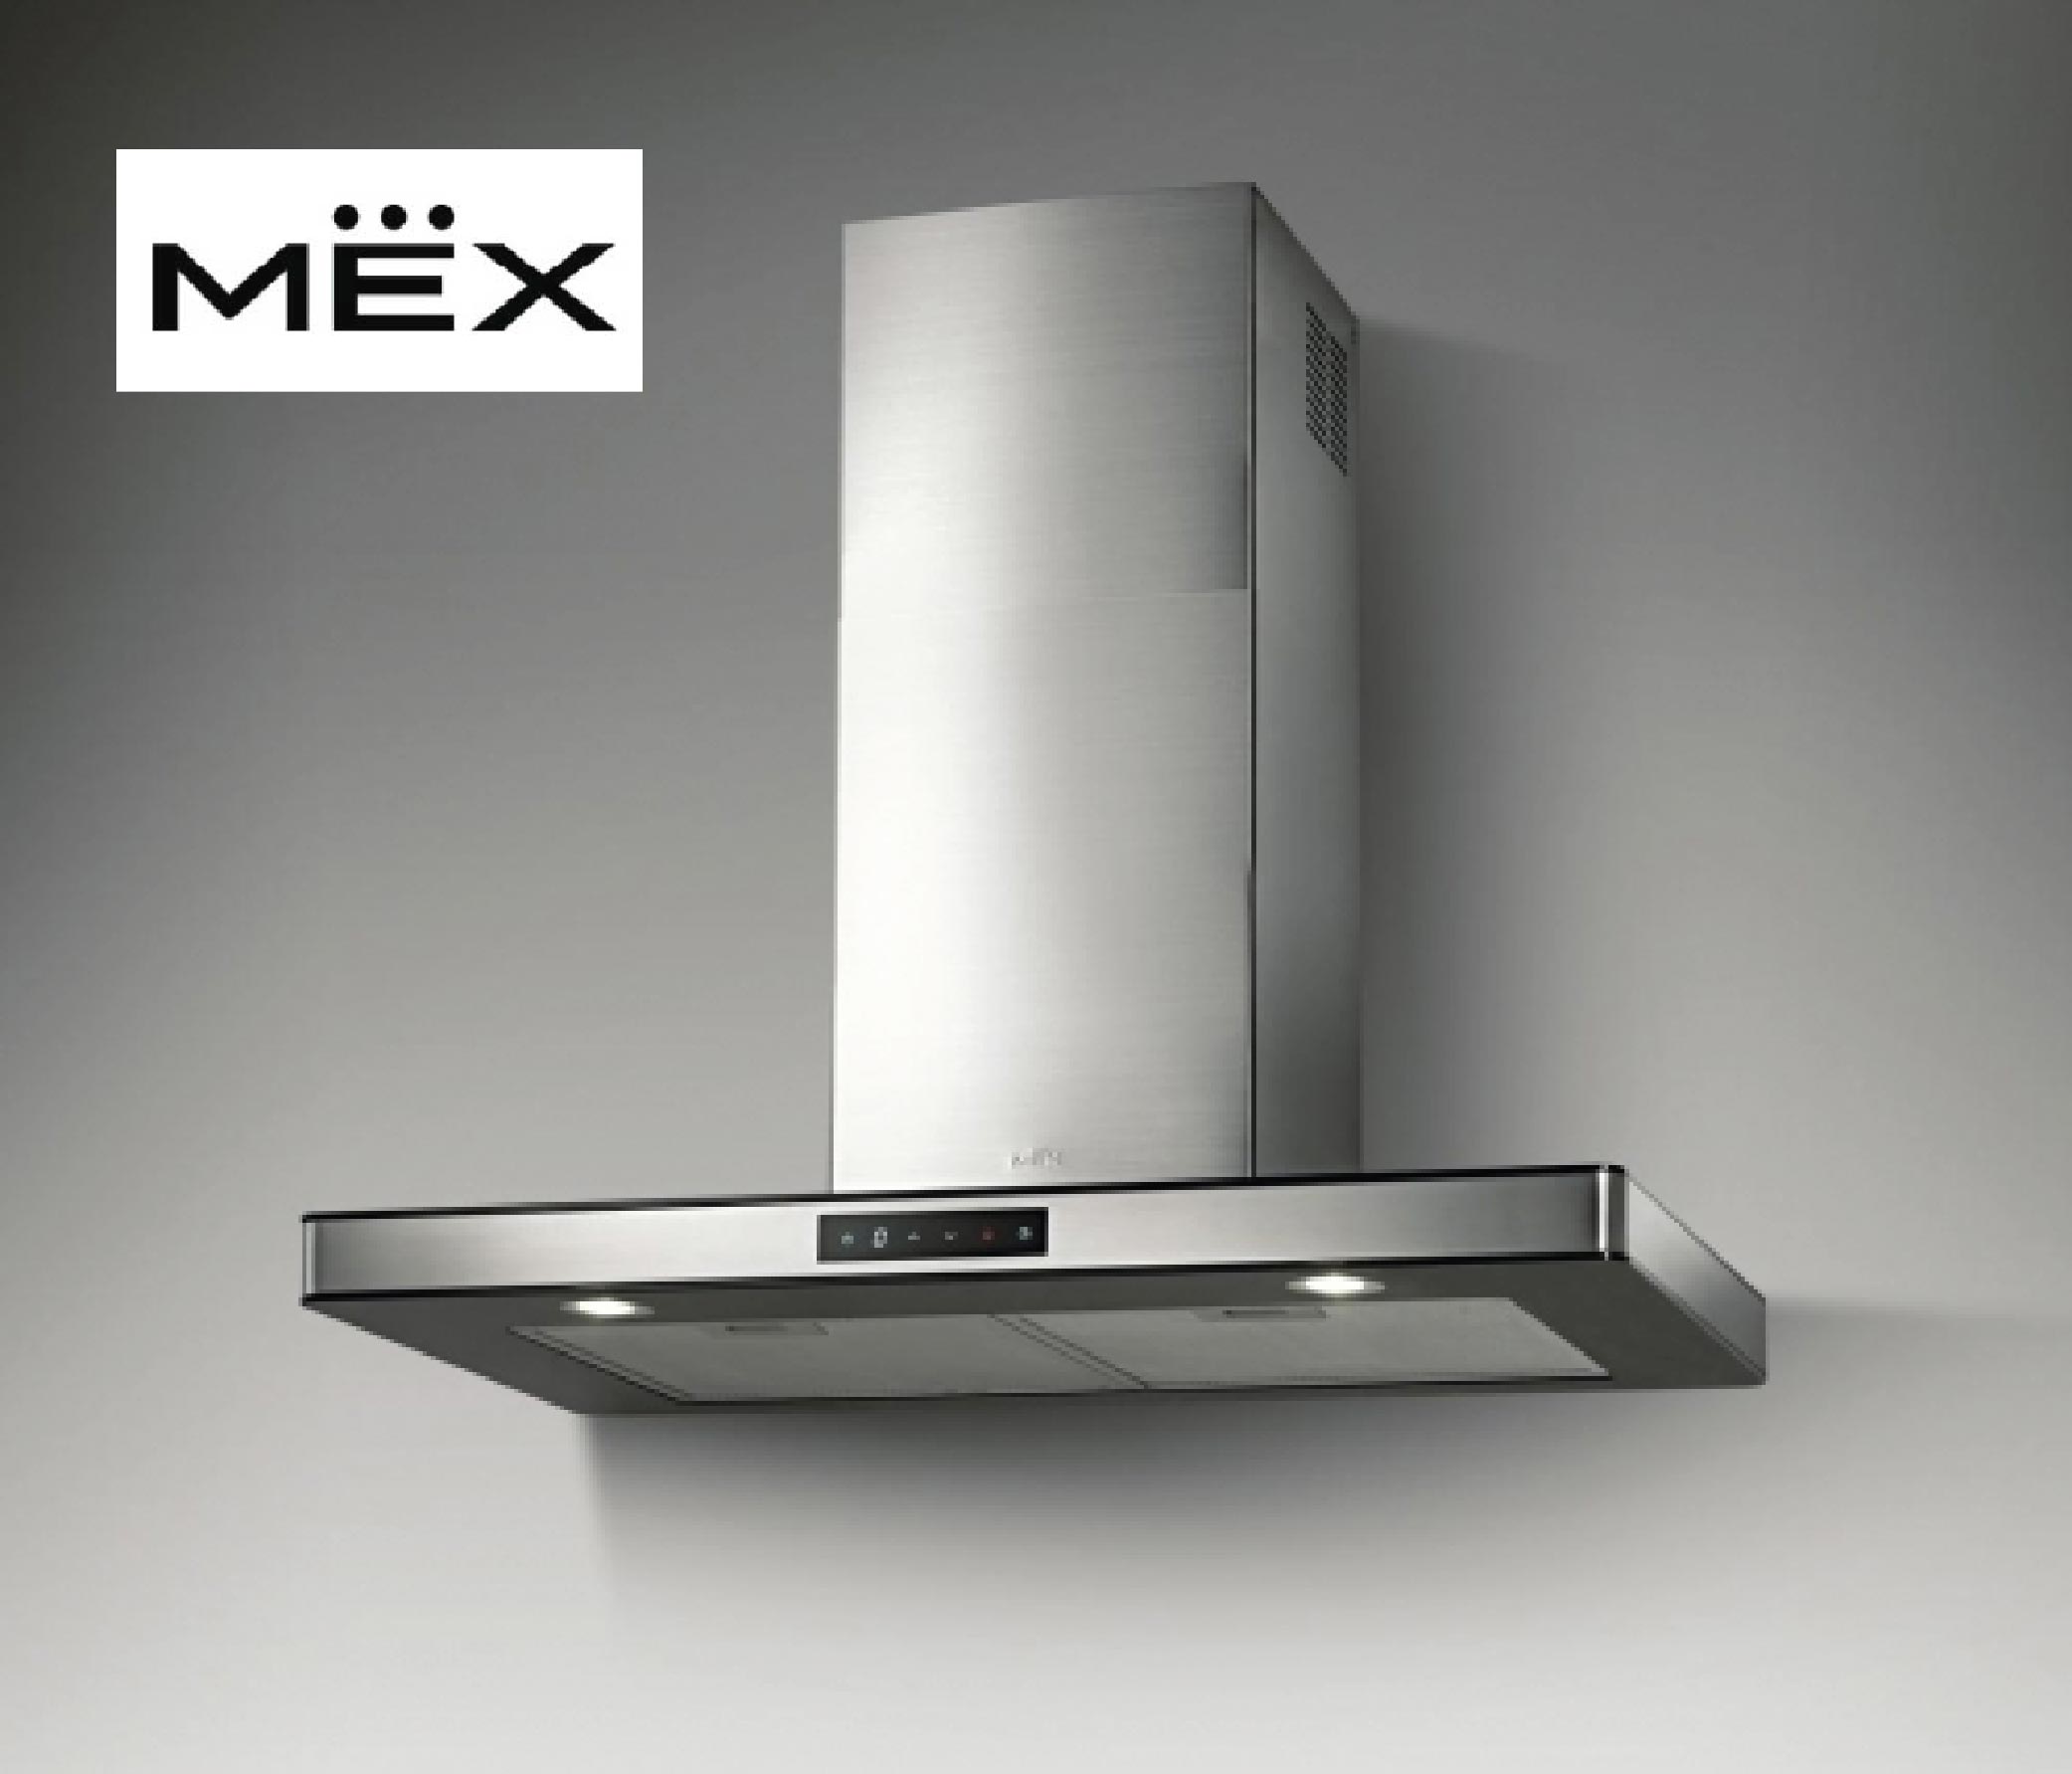 เครื่องดูดควัน MEX ดีจริงหรือ - Kitchenform เครื่องใช้ไฟฟ้าและอุปกรณ์ในห้องครัว [ ส่งฟรี เก็บเงินปลายทาง ]